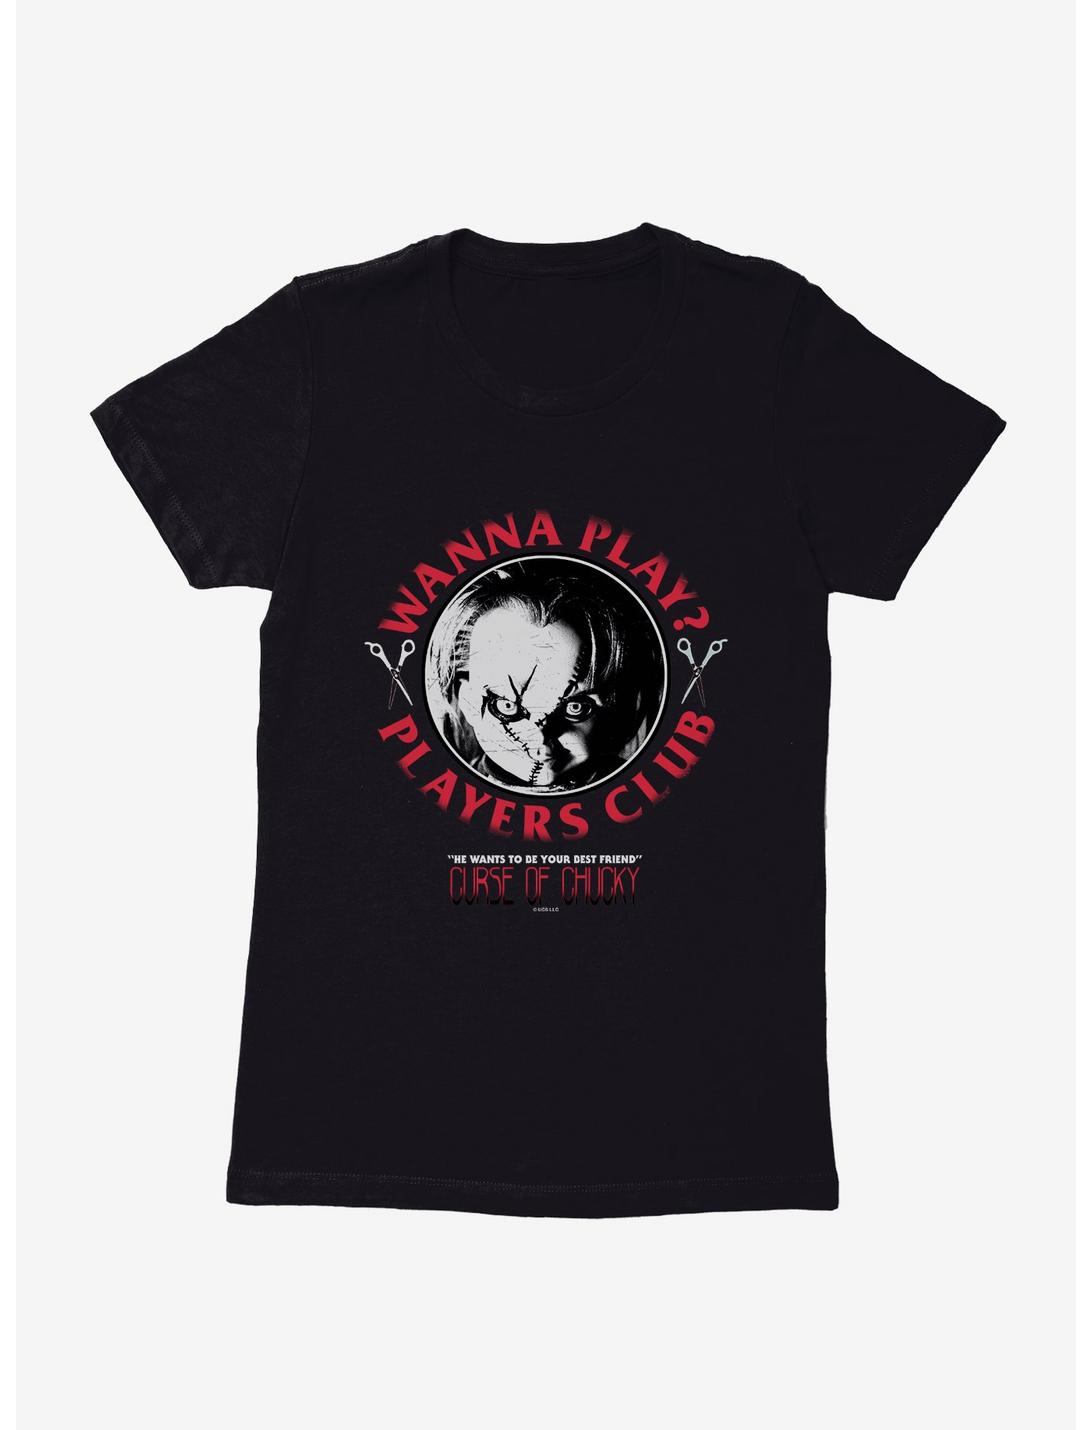 Chucky Wanna Play Players Club Womens T-Shirt, BLACK, hi-res